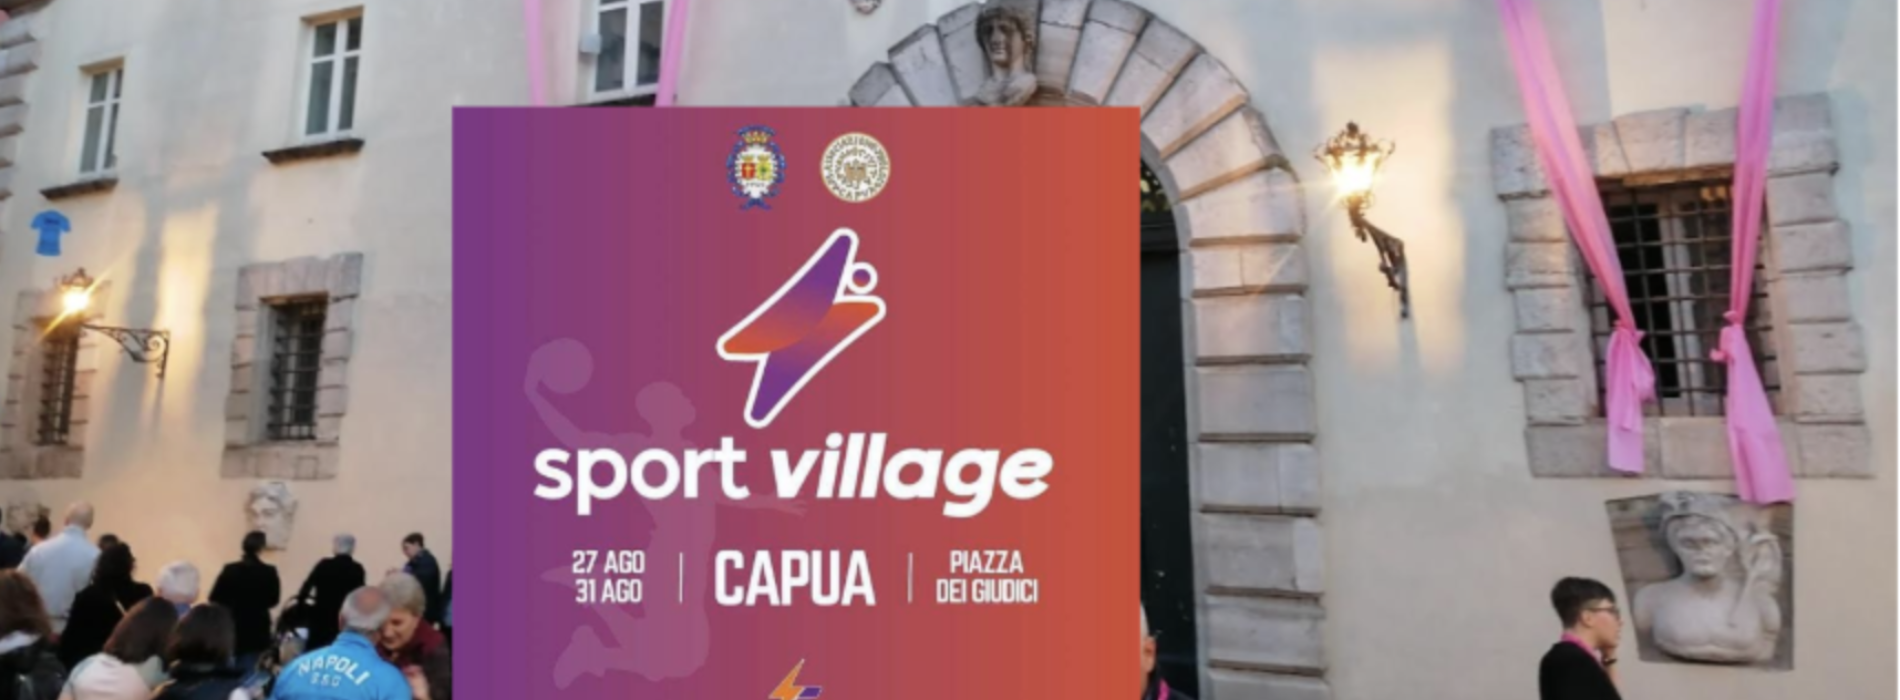 Sport Village, a Capua dal 27 al 31 agosto in piazza dei Giudici